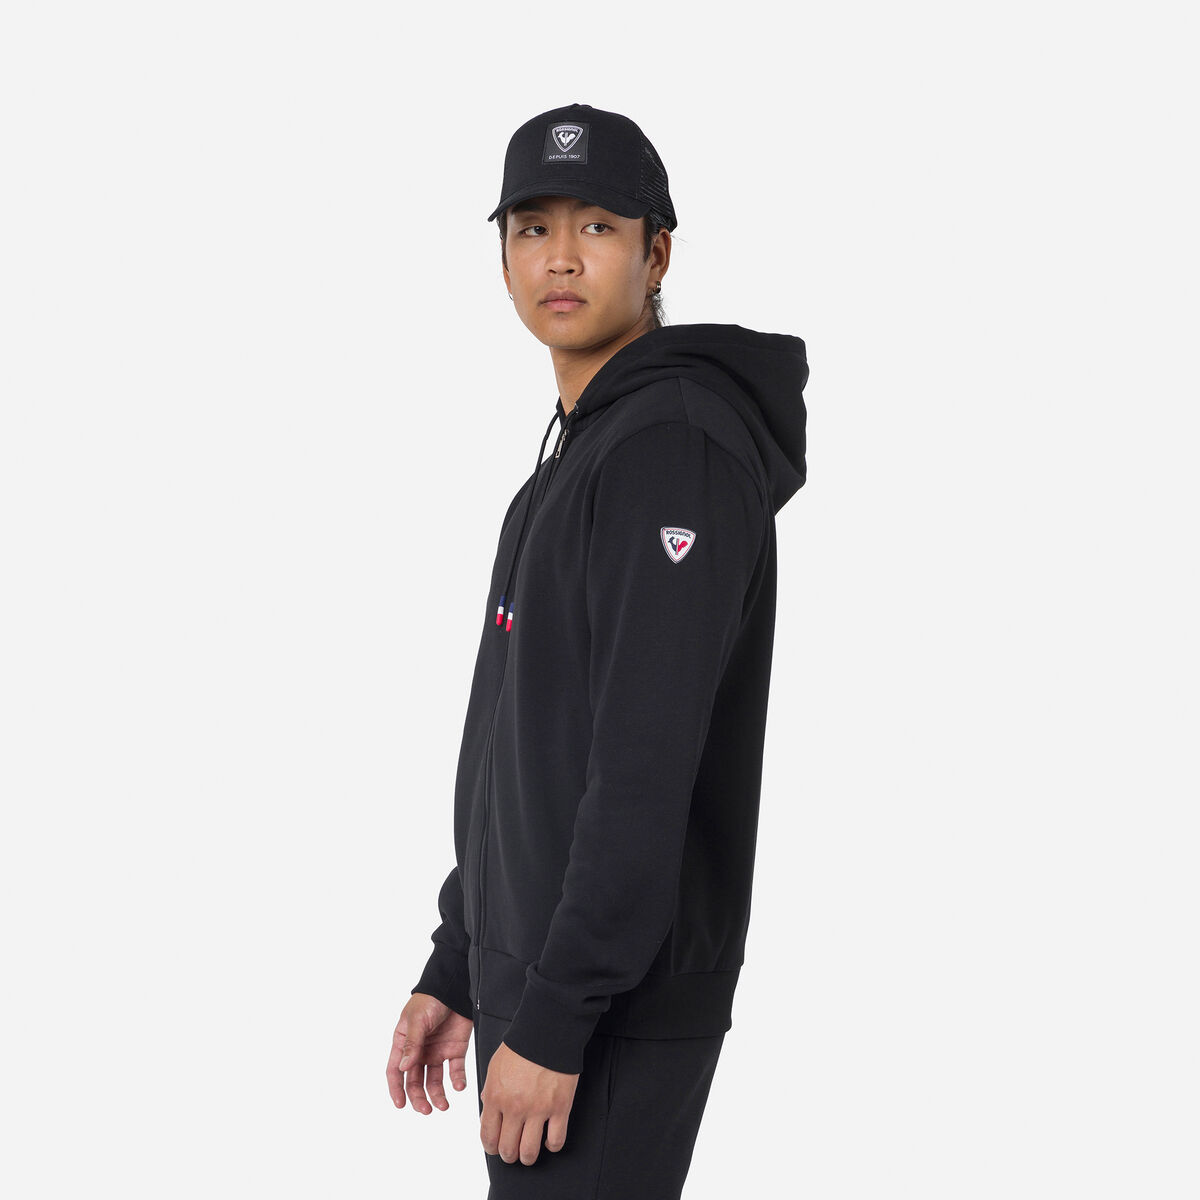 Rossignol Men's full-zip hooded logo cotton sweatshirt Black